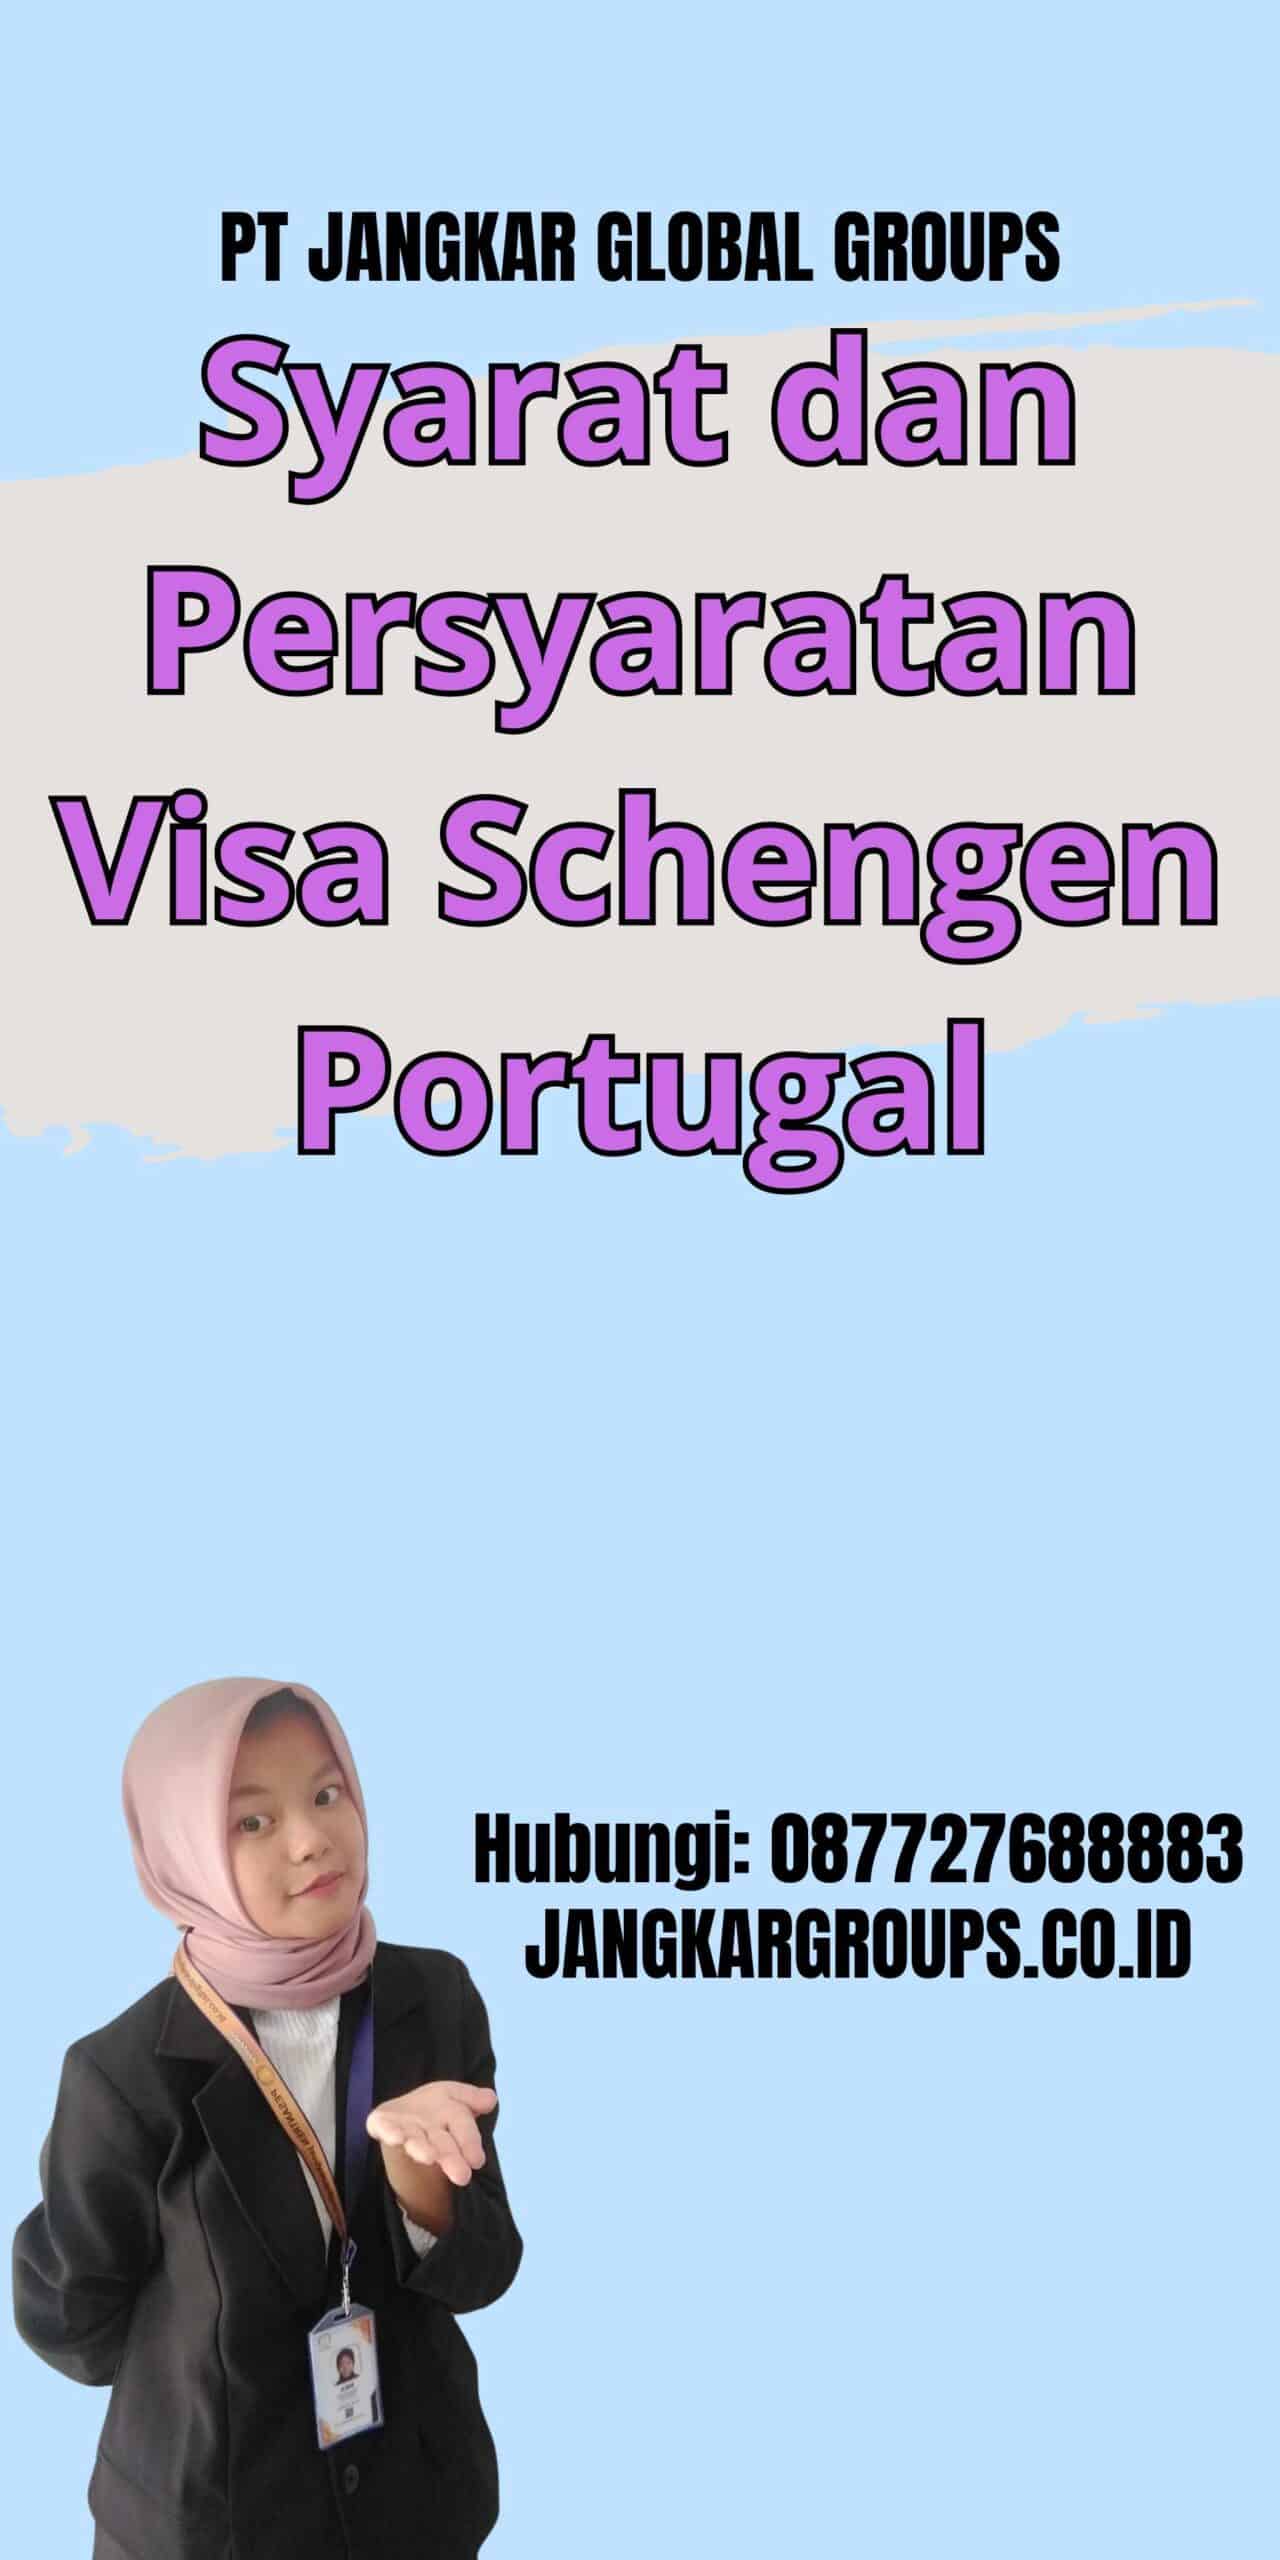 Syarat dan Persyaratan Visa Schengen Portugal